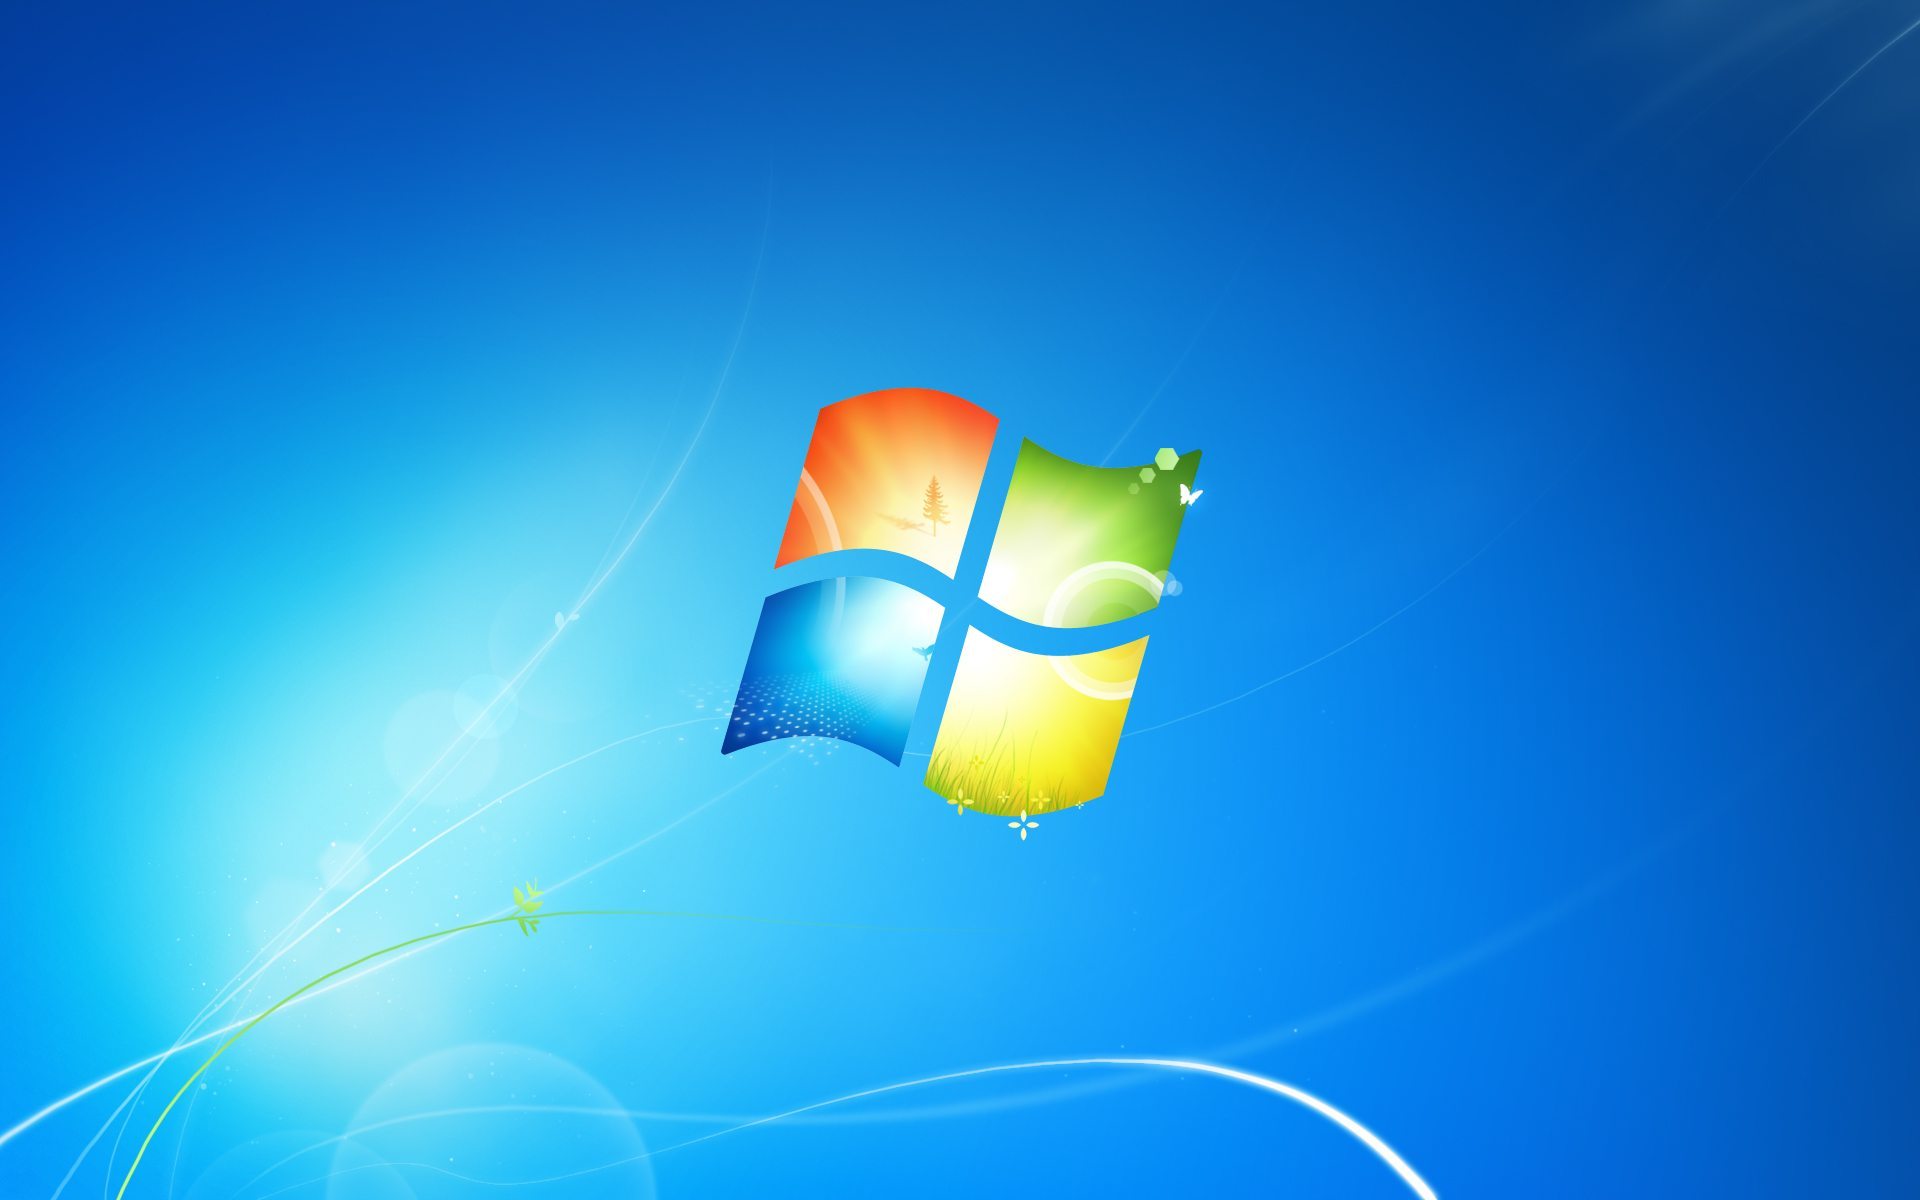 Windows 7 và 8 được hỗ trợ đầy đủ, giúp cho người dùng có thể sử dụng một cách dễ dàng và thuận tiện. Hãy cùng khám phá hình ảnh liên quan đến hai hệ điều hành này và cảm nhận sự khác biệt của chúng nhé!